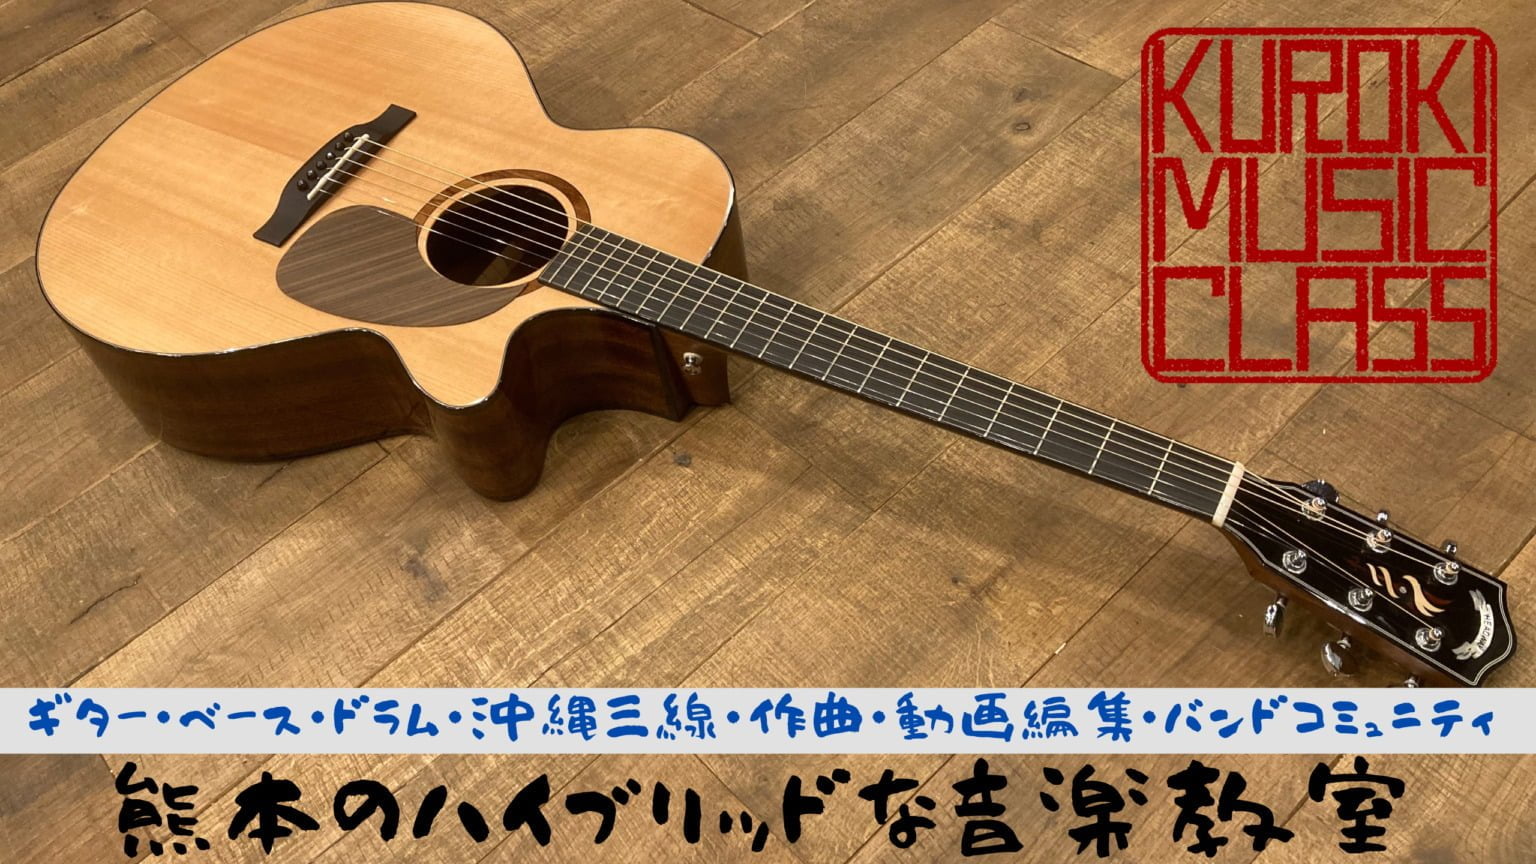 KUROKI MUSIC CLASS